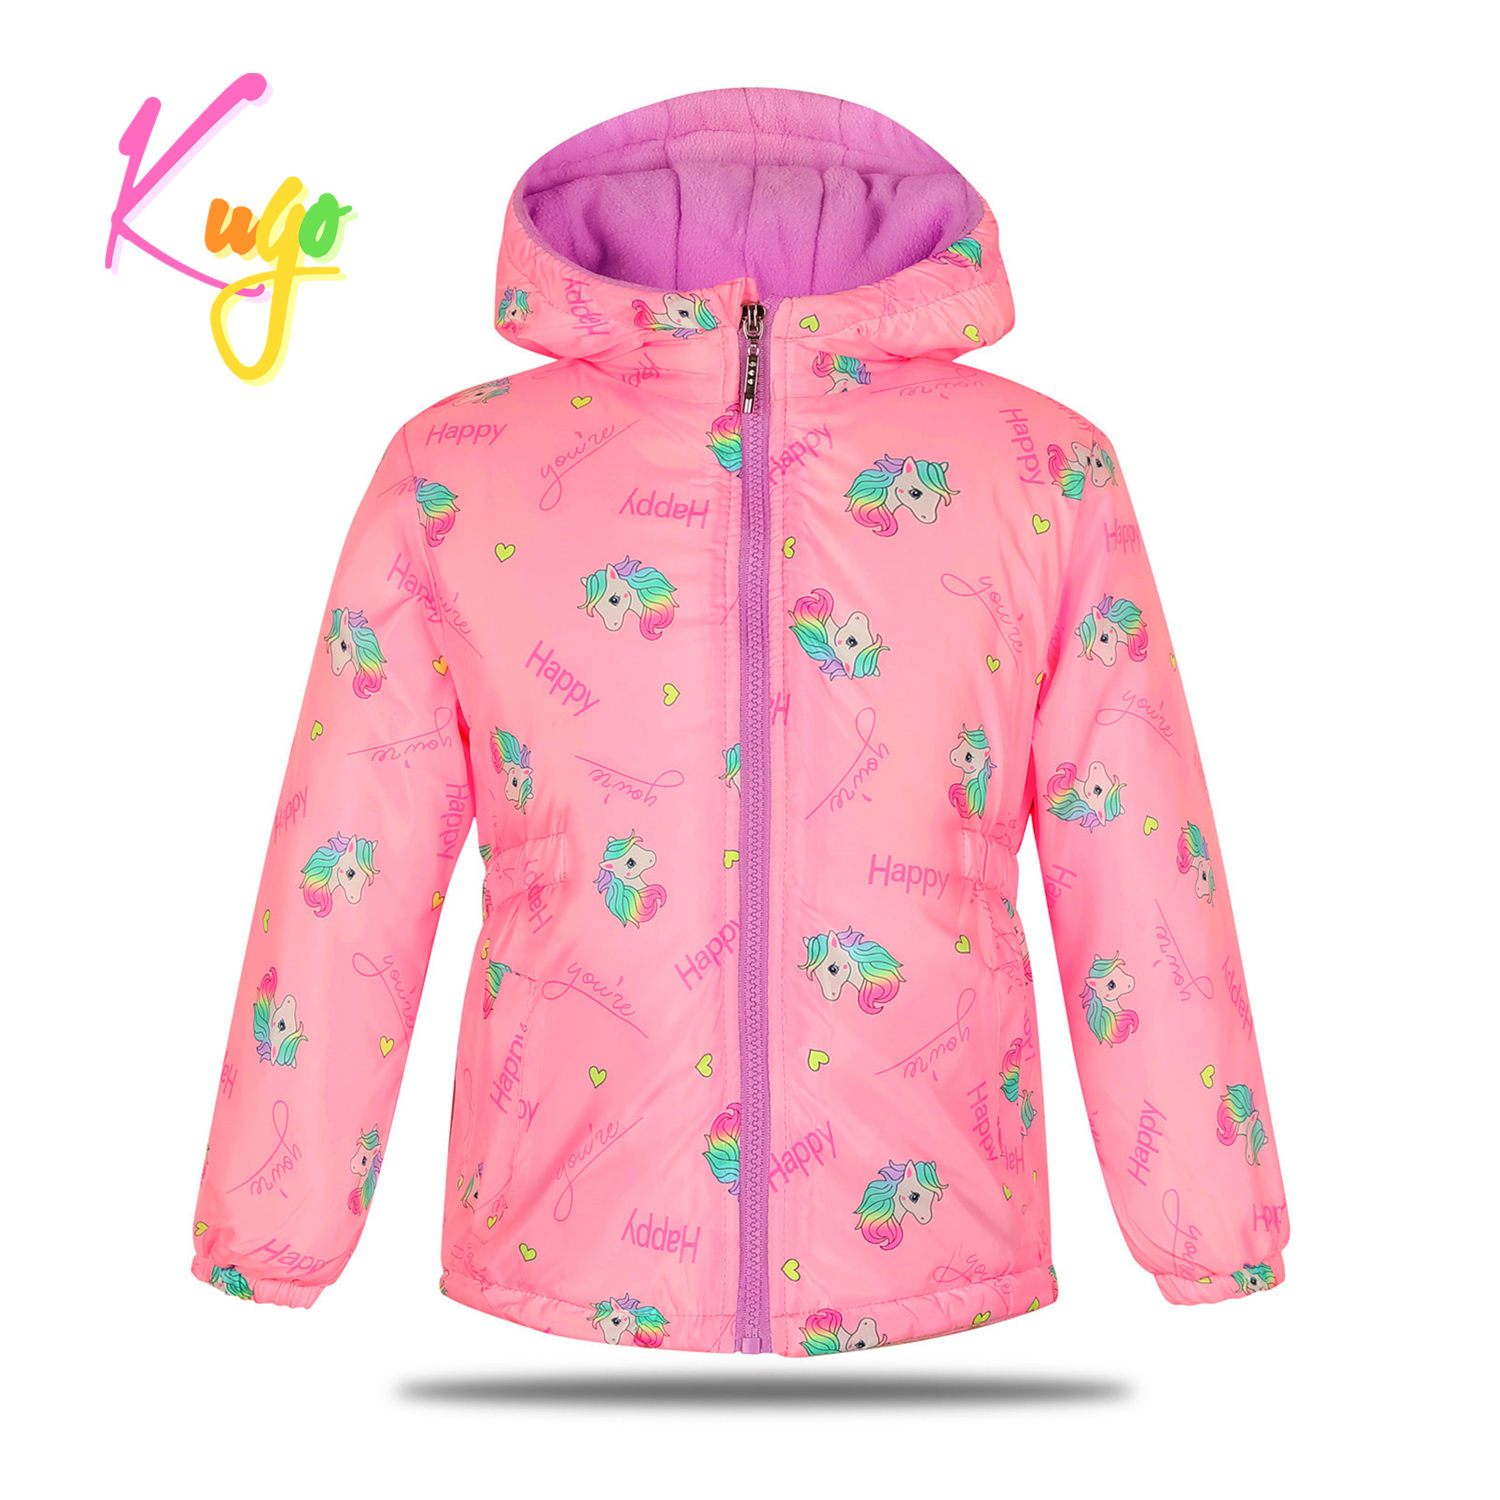 Dívčí zimní bunda - KUGO KM9982, růžová Barva: Růžová, Velikost: 98